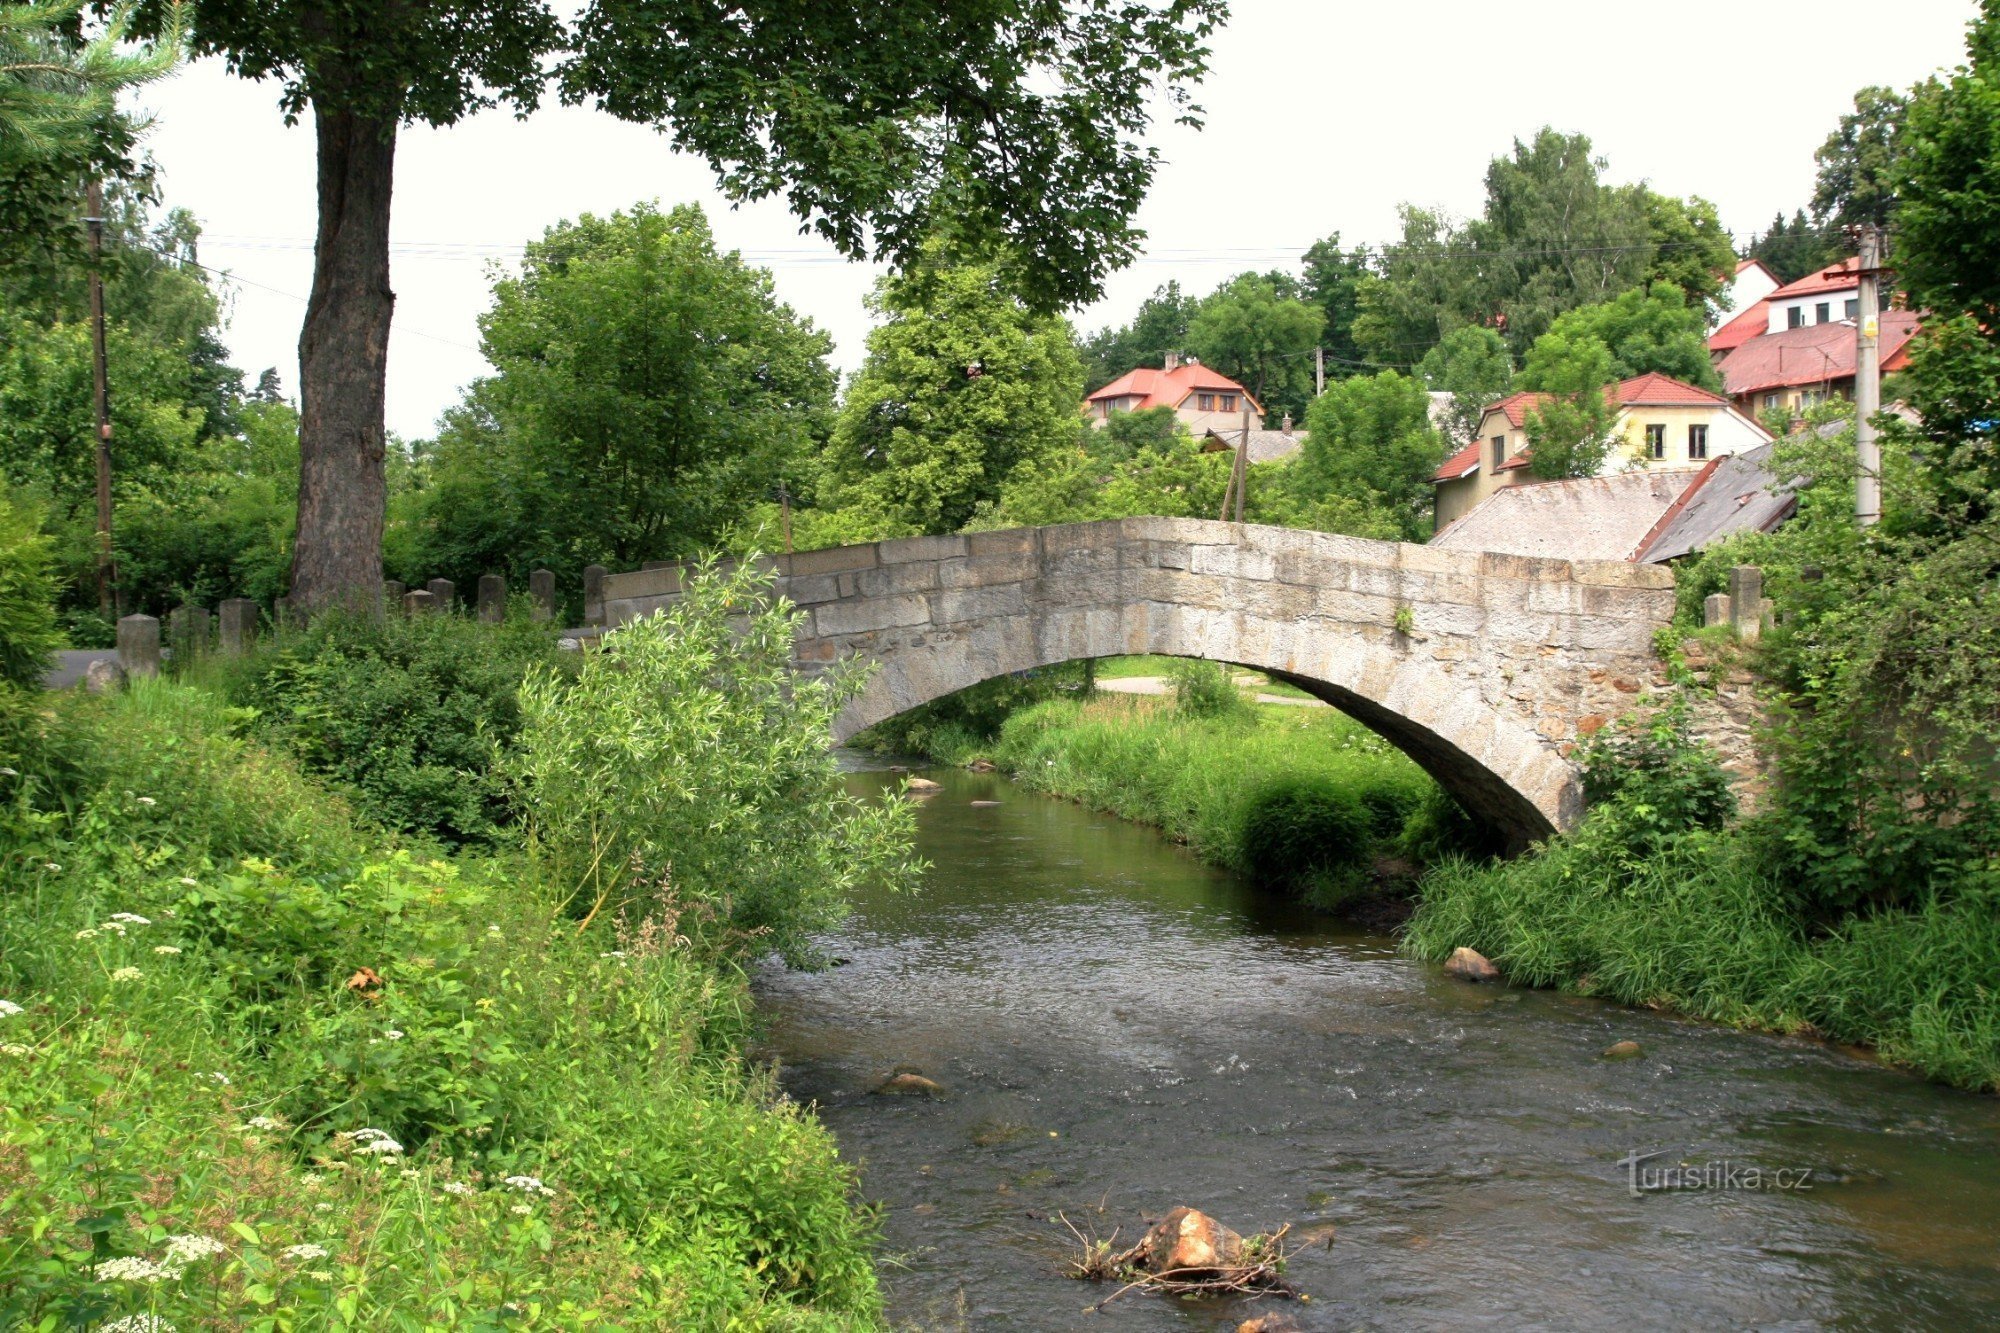 Hamry nad Sázavou - historic stone bridge